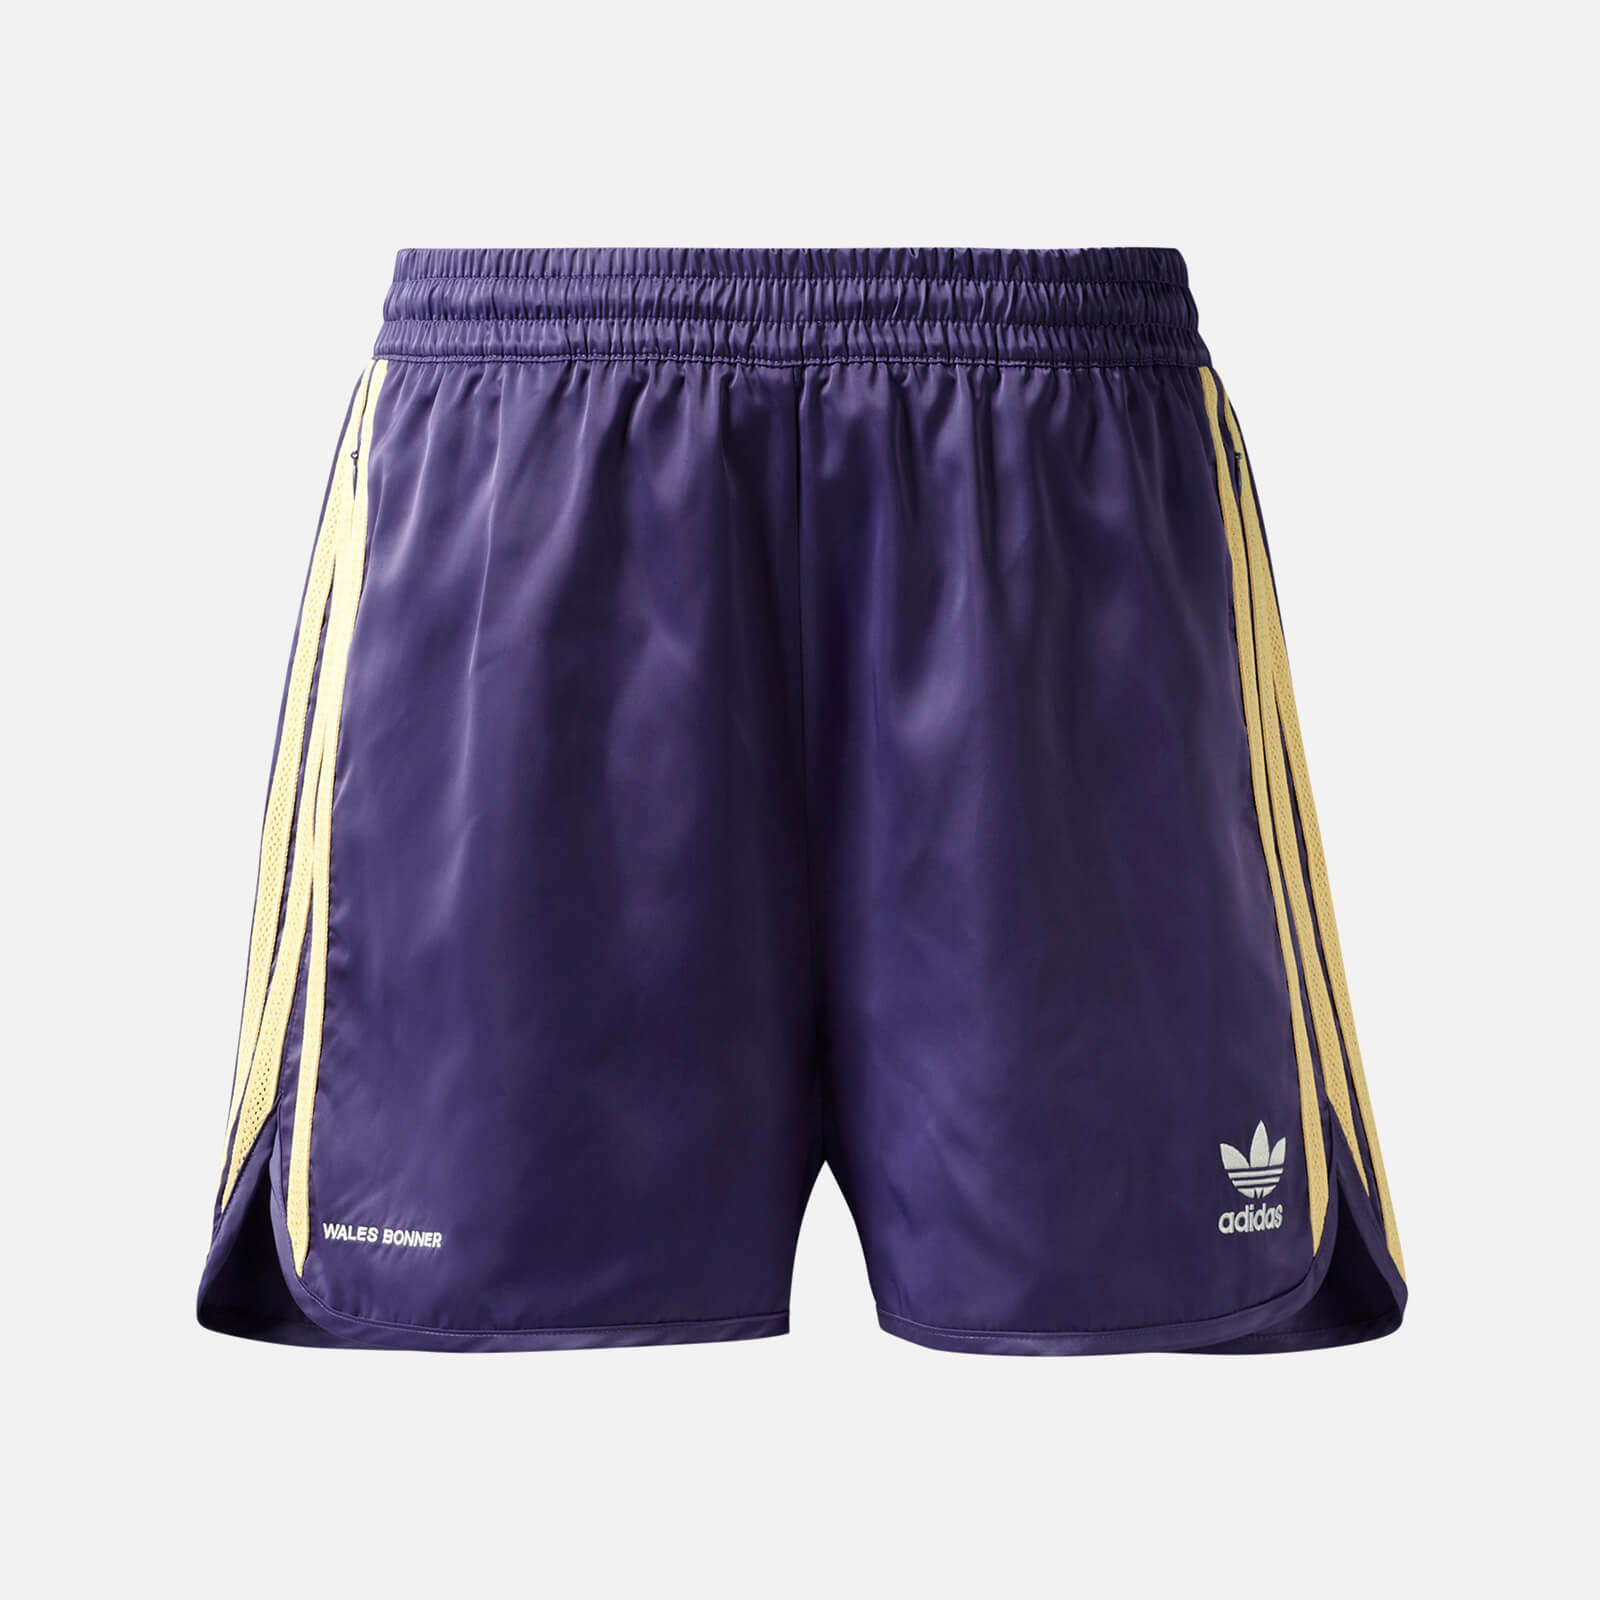 adidas X Wales Bonner Men's 70S Shorts - Unity Purple - M